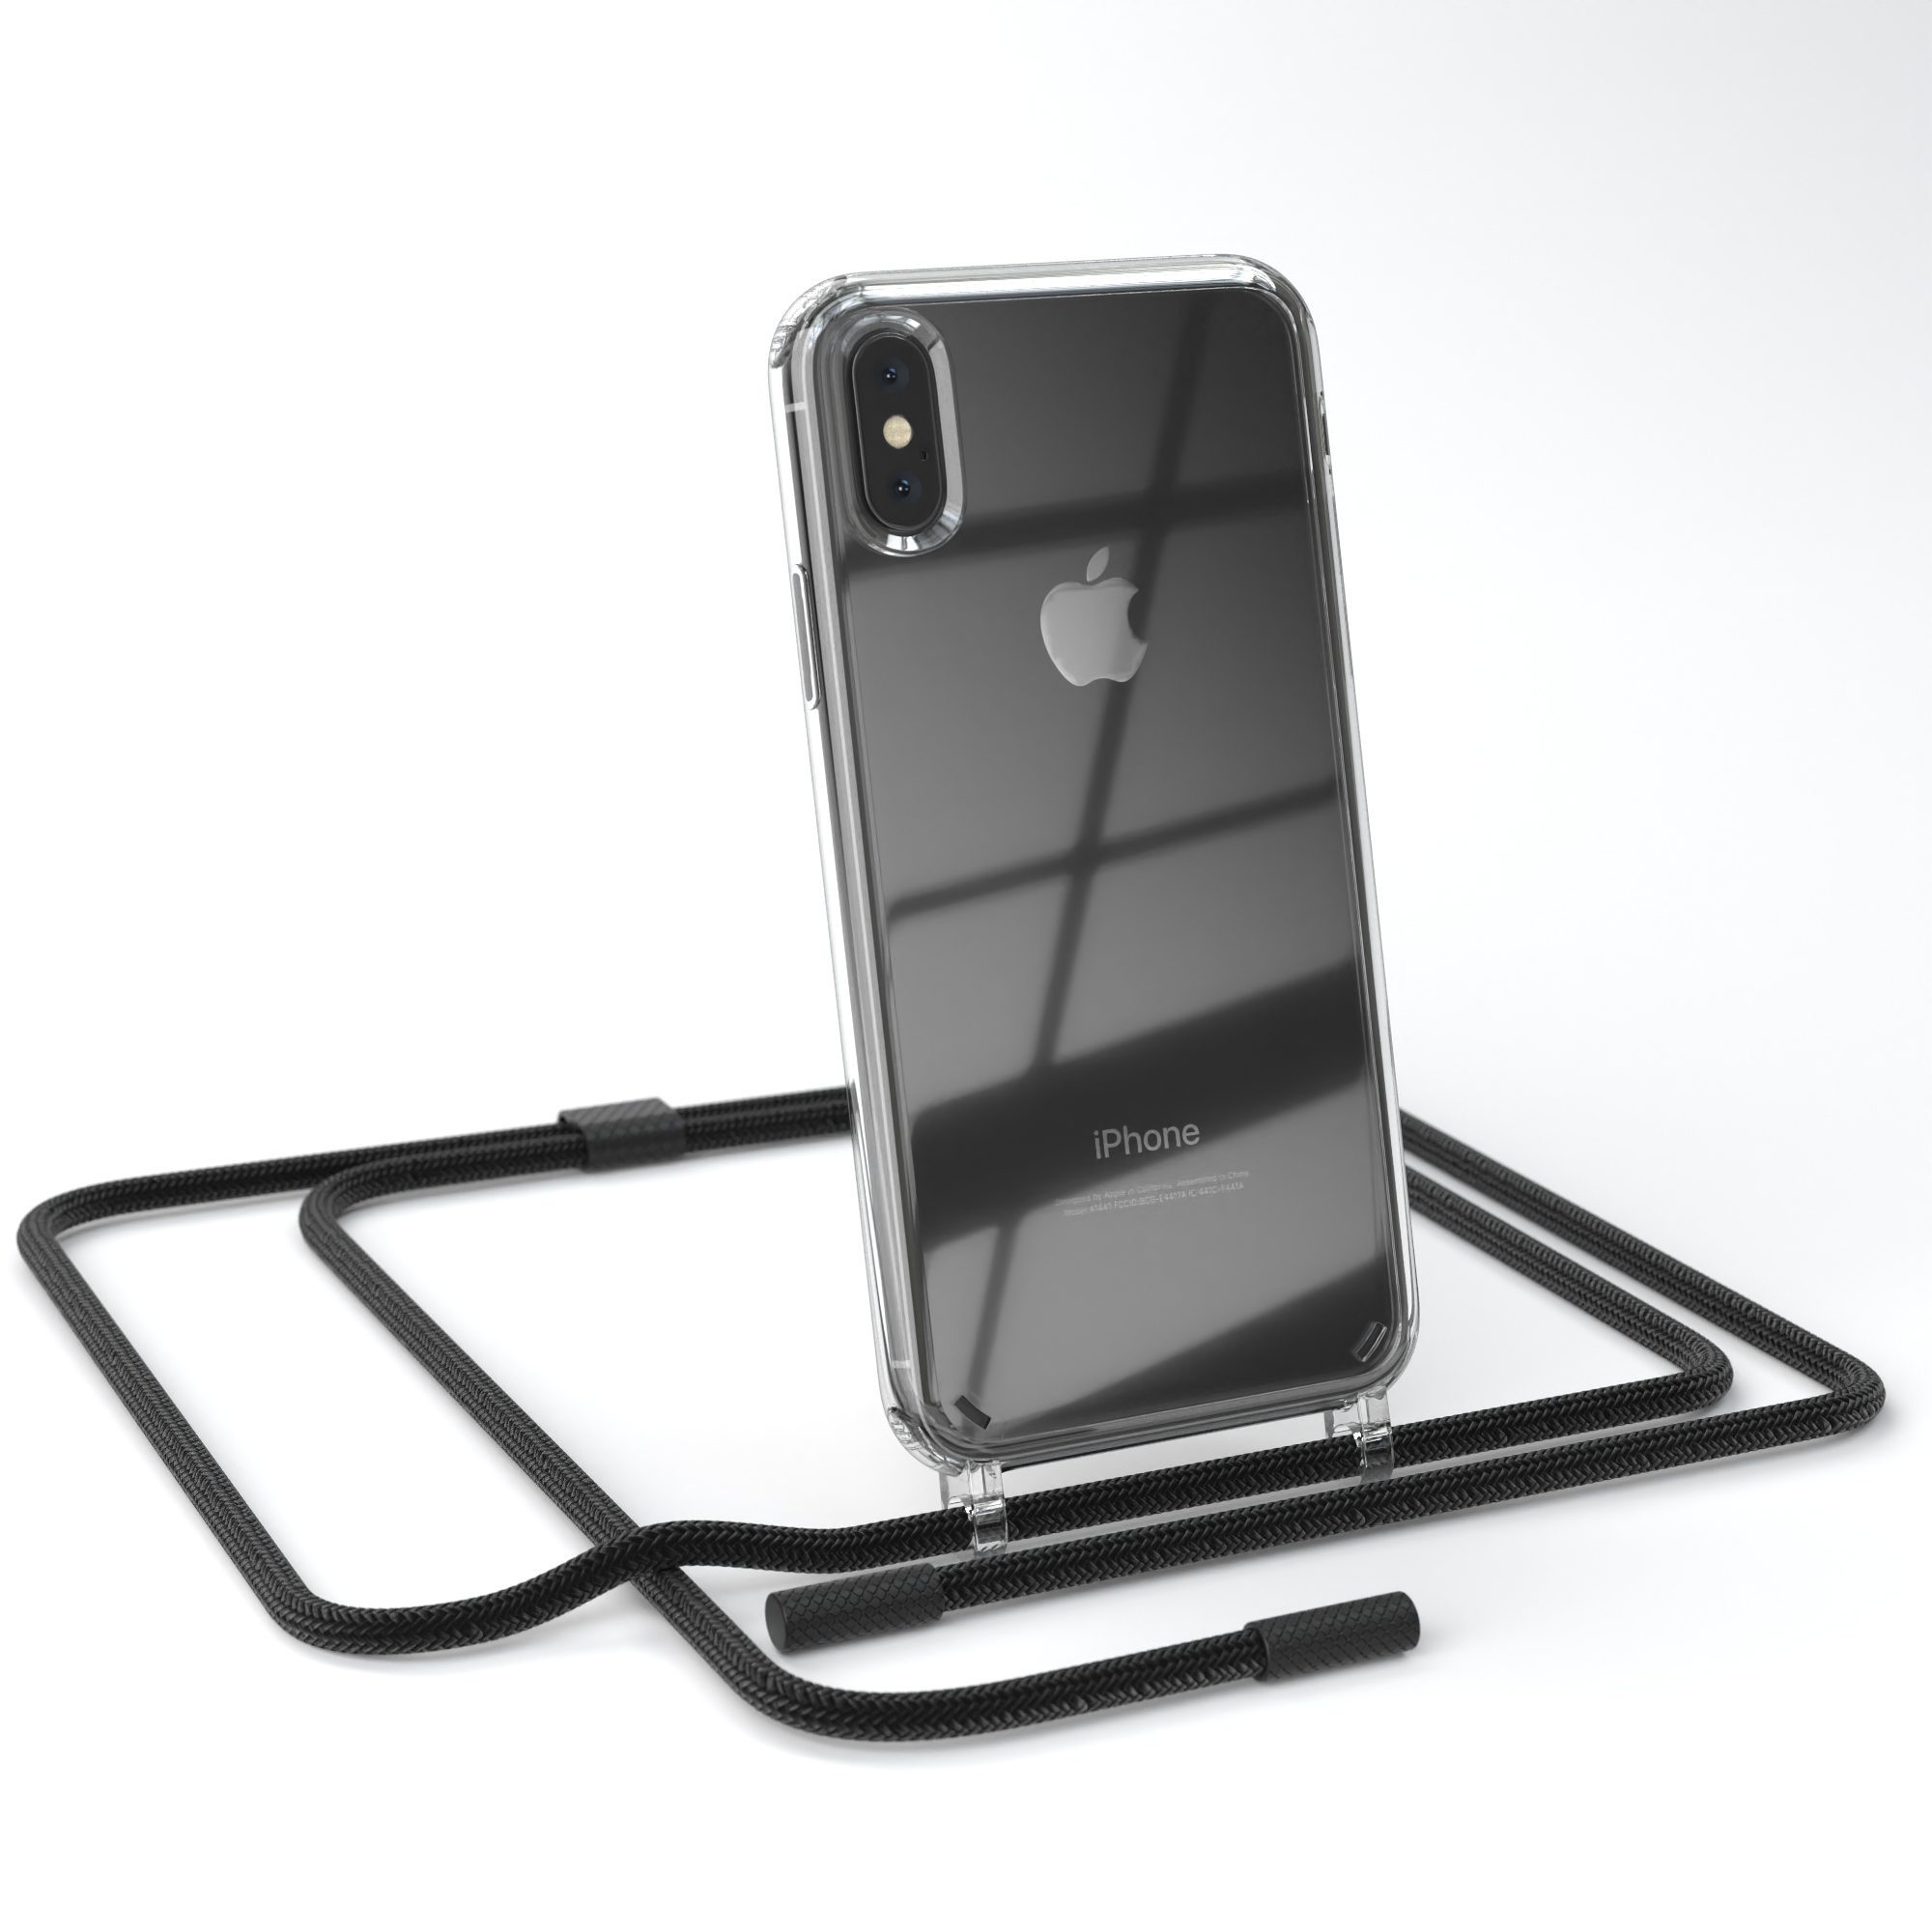 EAZY CASE Transparente Handyhülle mit X unifarbend, iPhone / runder Apple, XS, Schwarz Umhängetasche, Kette